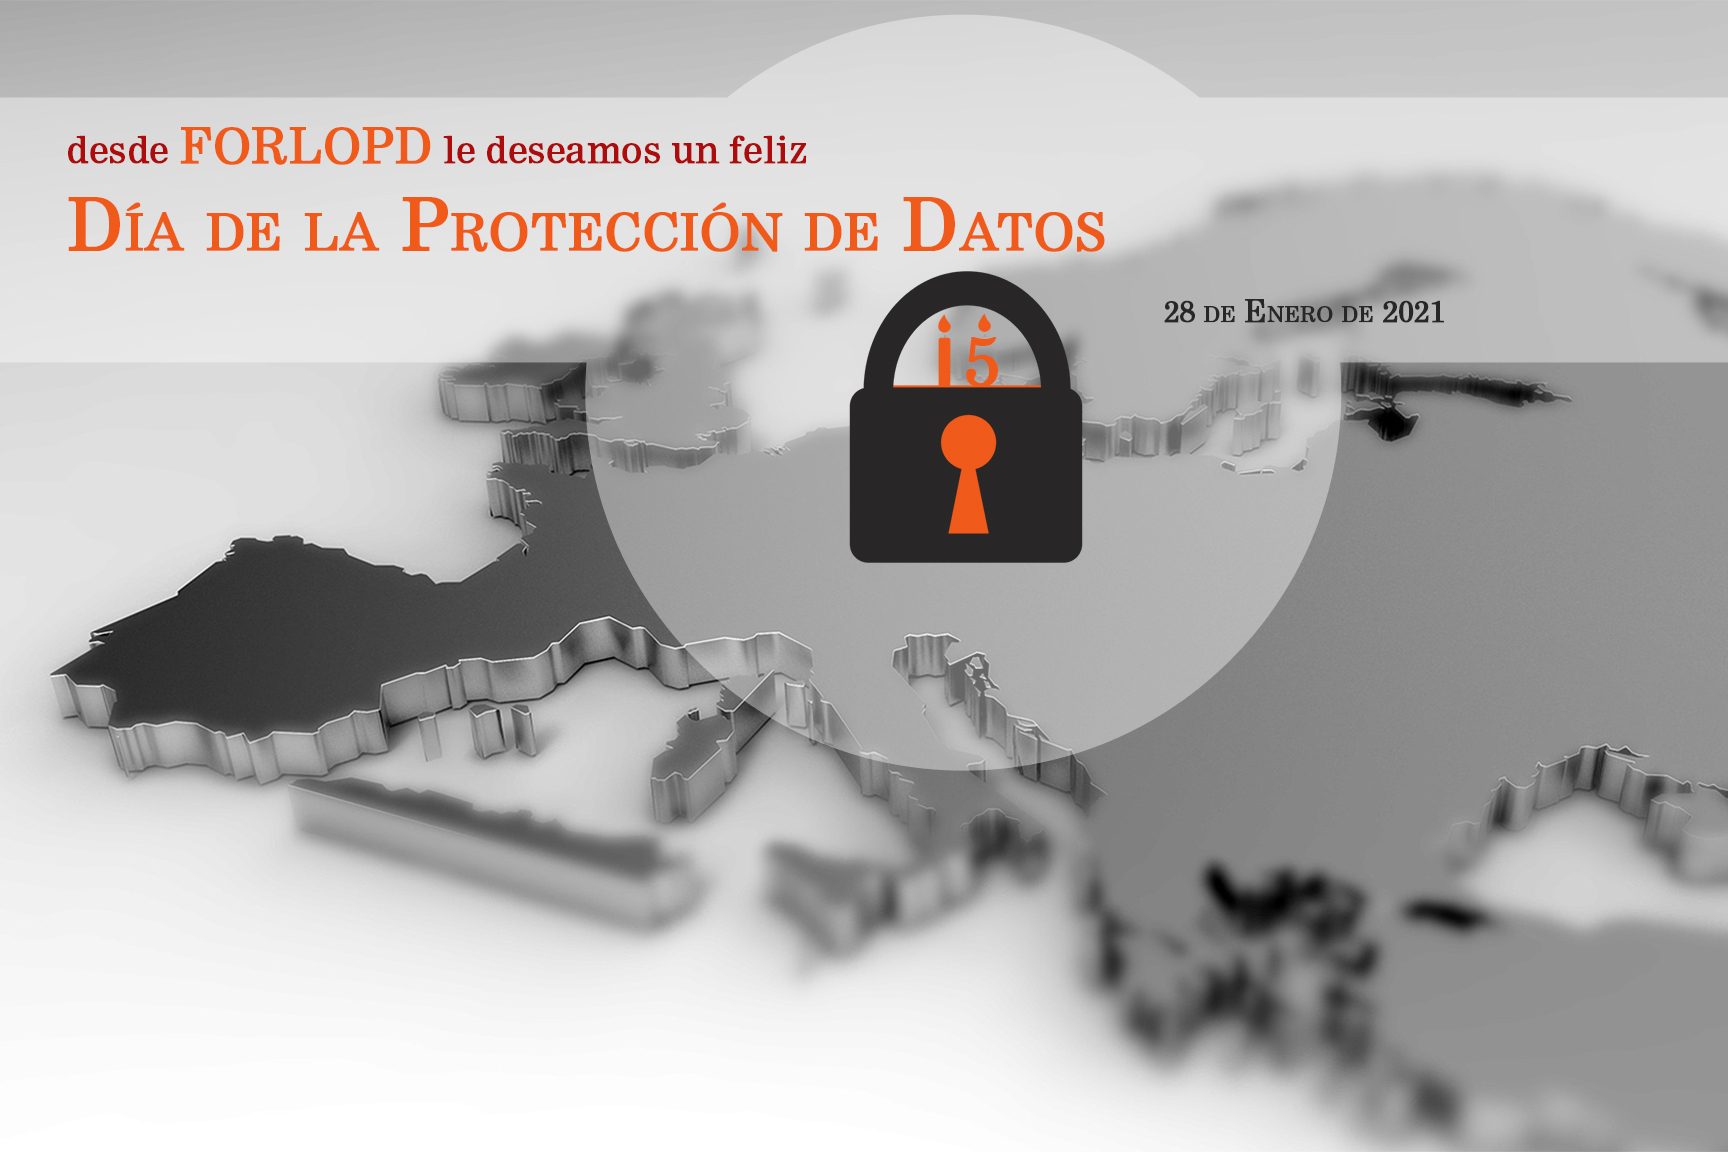 Forlopd celebra el día de la protección de datos